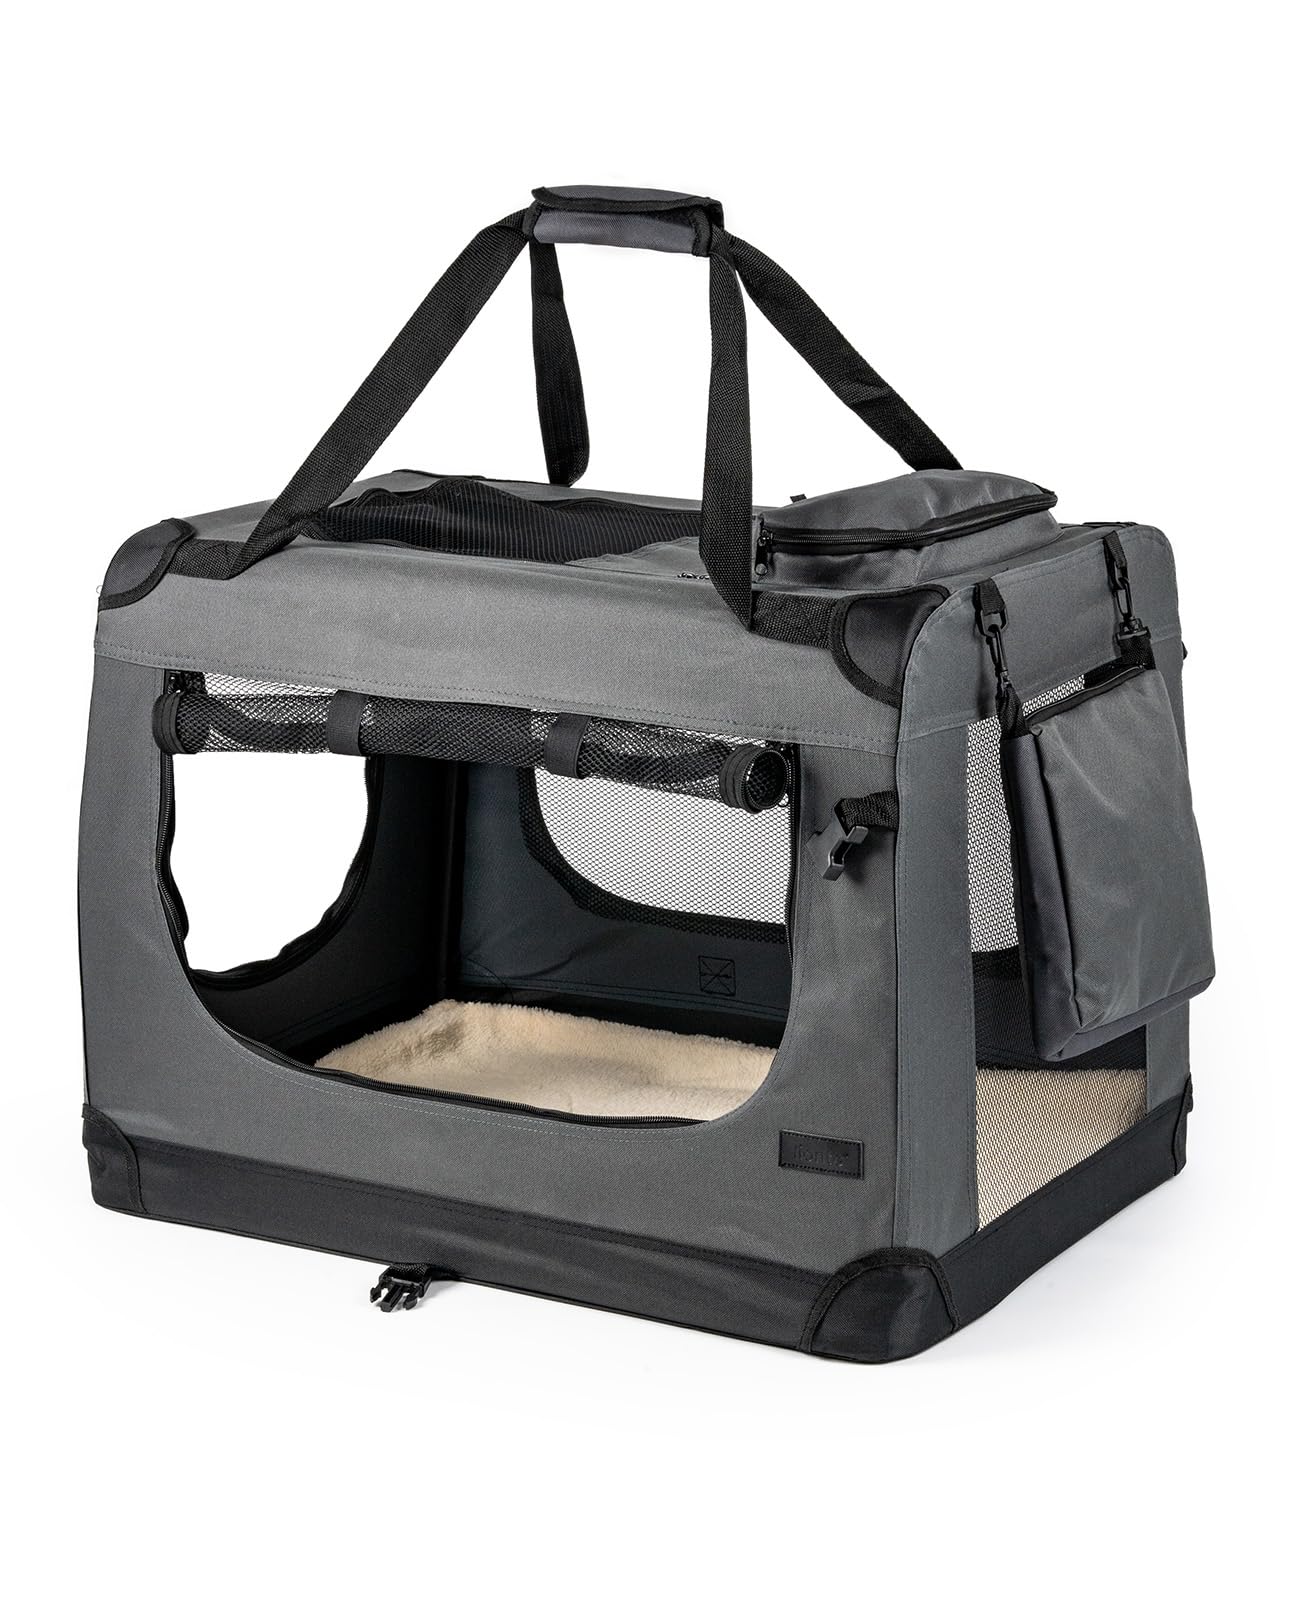 lionto Hundetransportbox faltbar für Reise & Auto, 101x69x70 cm, stabile Transportbox mit Tragegriffen & Decke für Katzen & Hunde bis 25 kg, robuste Hundebox aus Stoff für klein & groß, grau